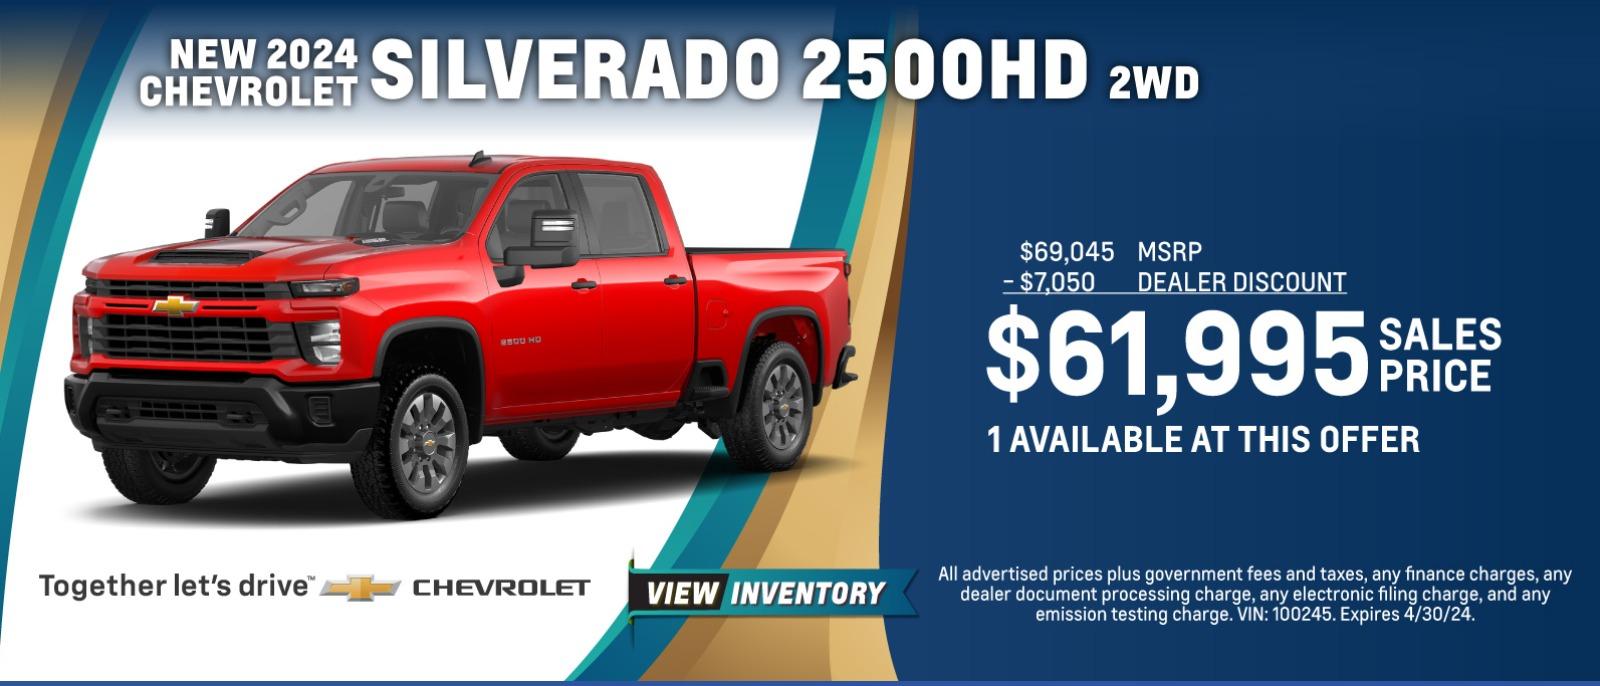 New Silverado 2500 HD